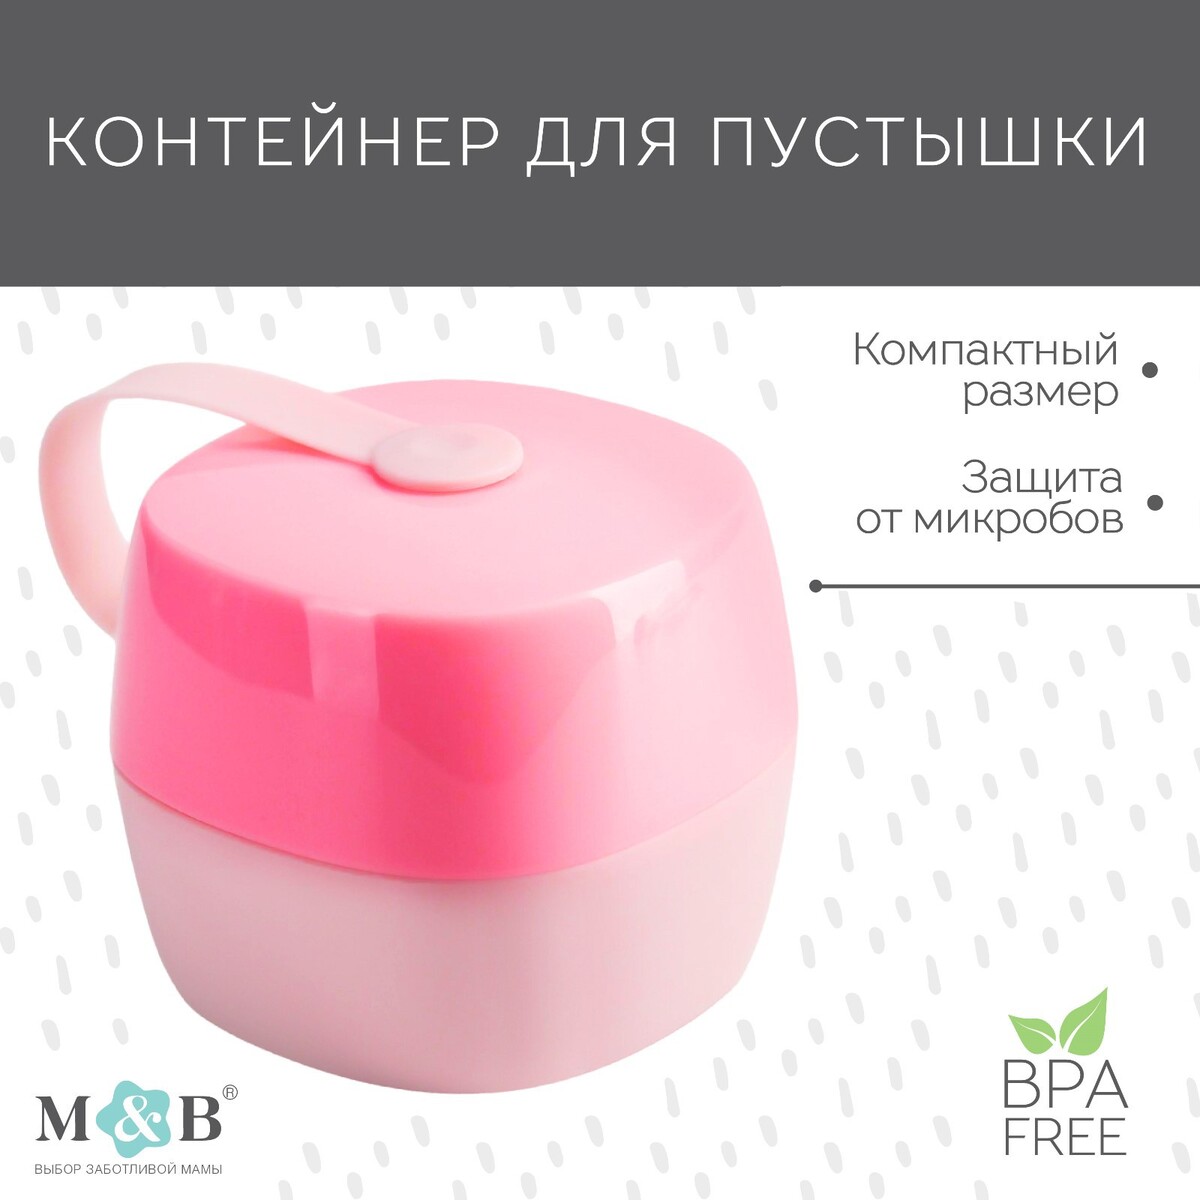 Контейнер для хранения и стерилизации детских сосок и пустышек, цвет белый/розовый контейнер для детской пустышки белый